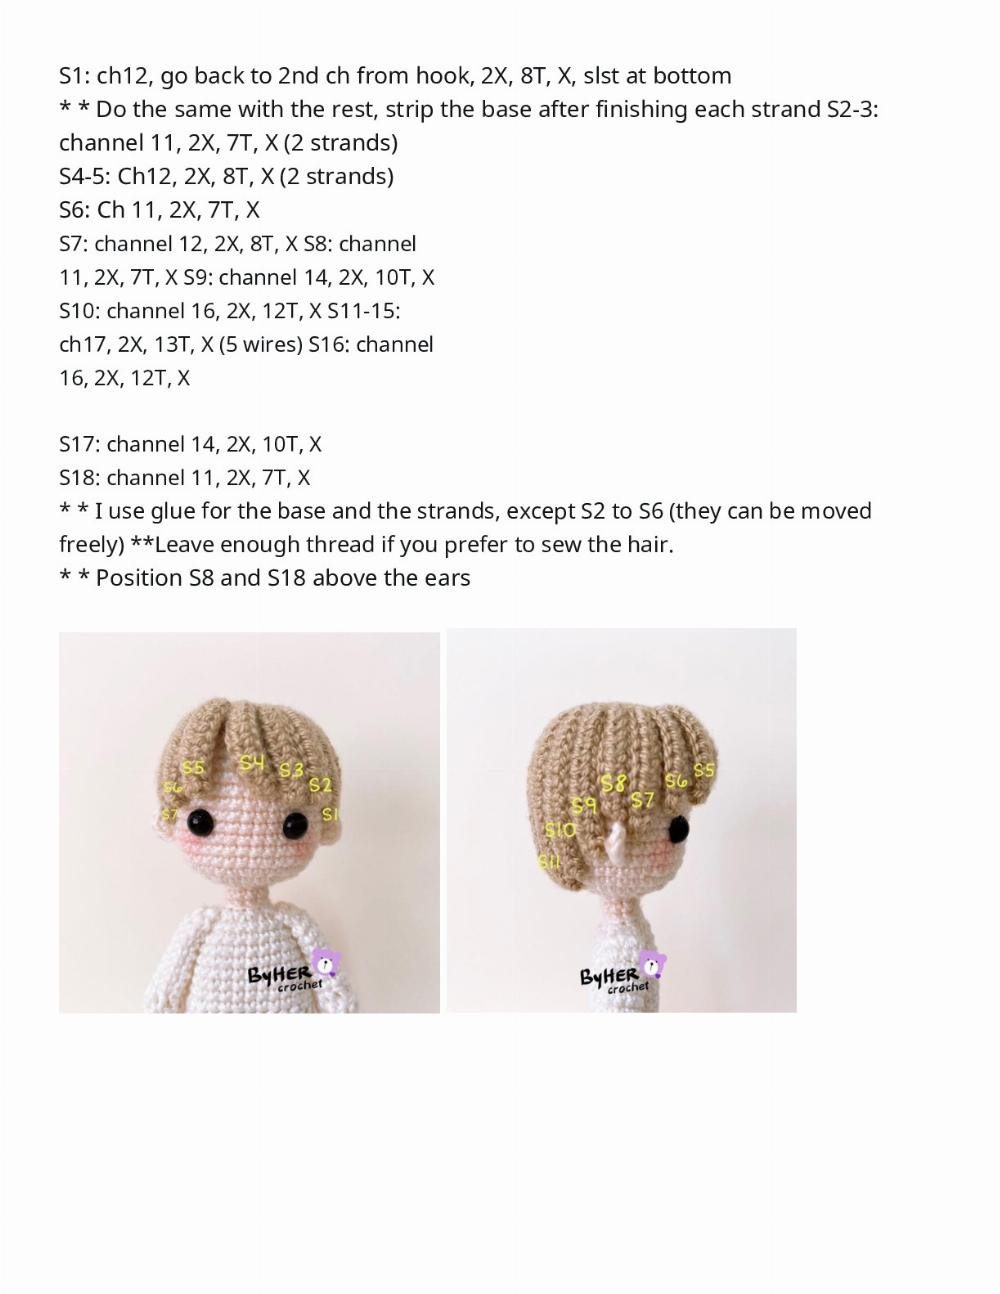 BTS crochet pattern